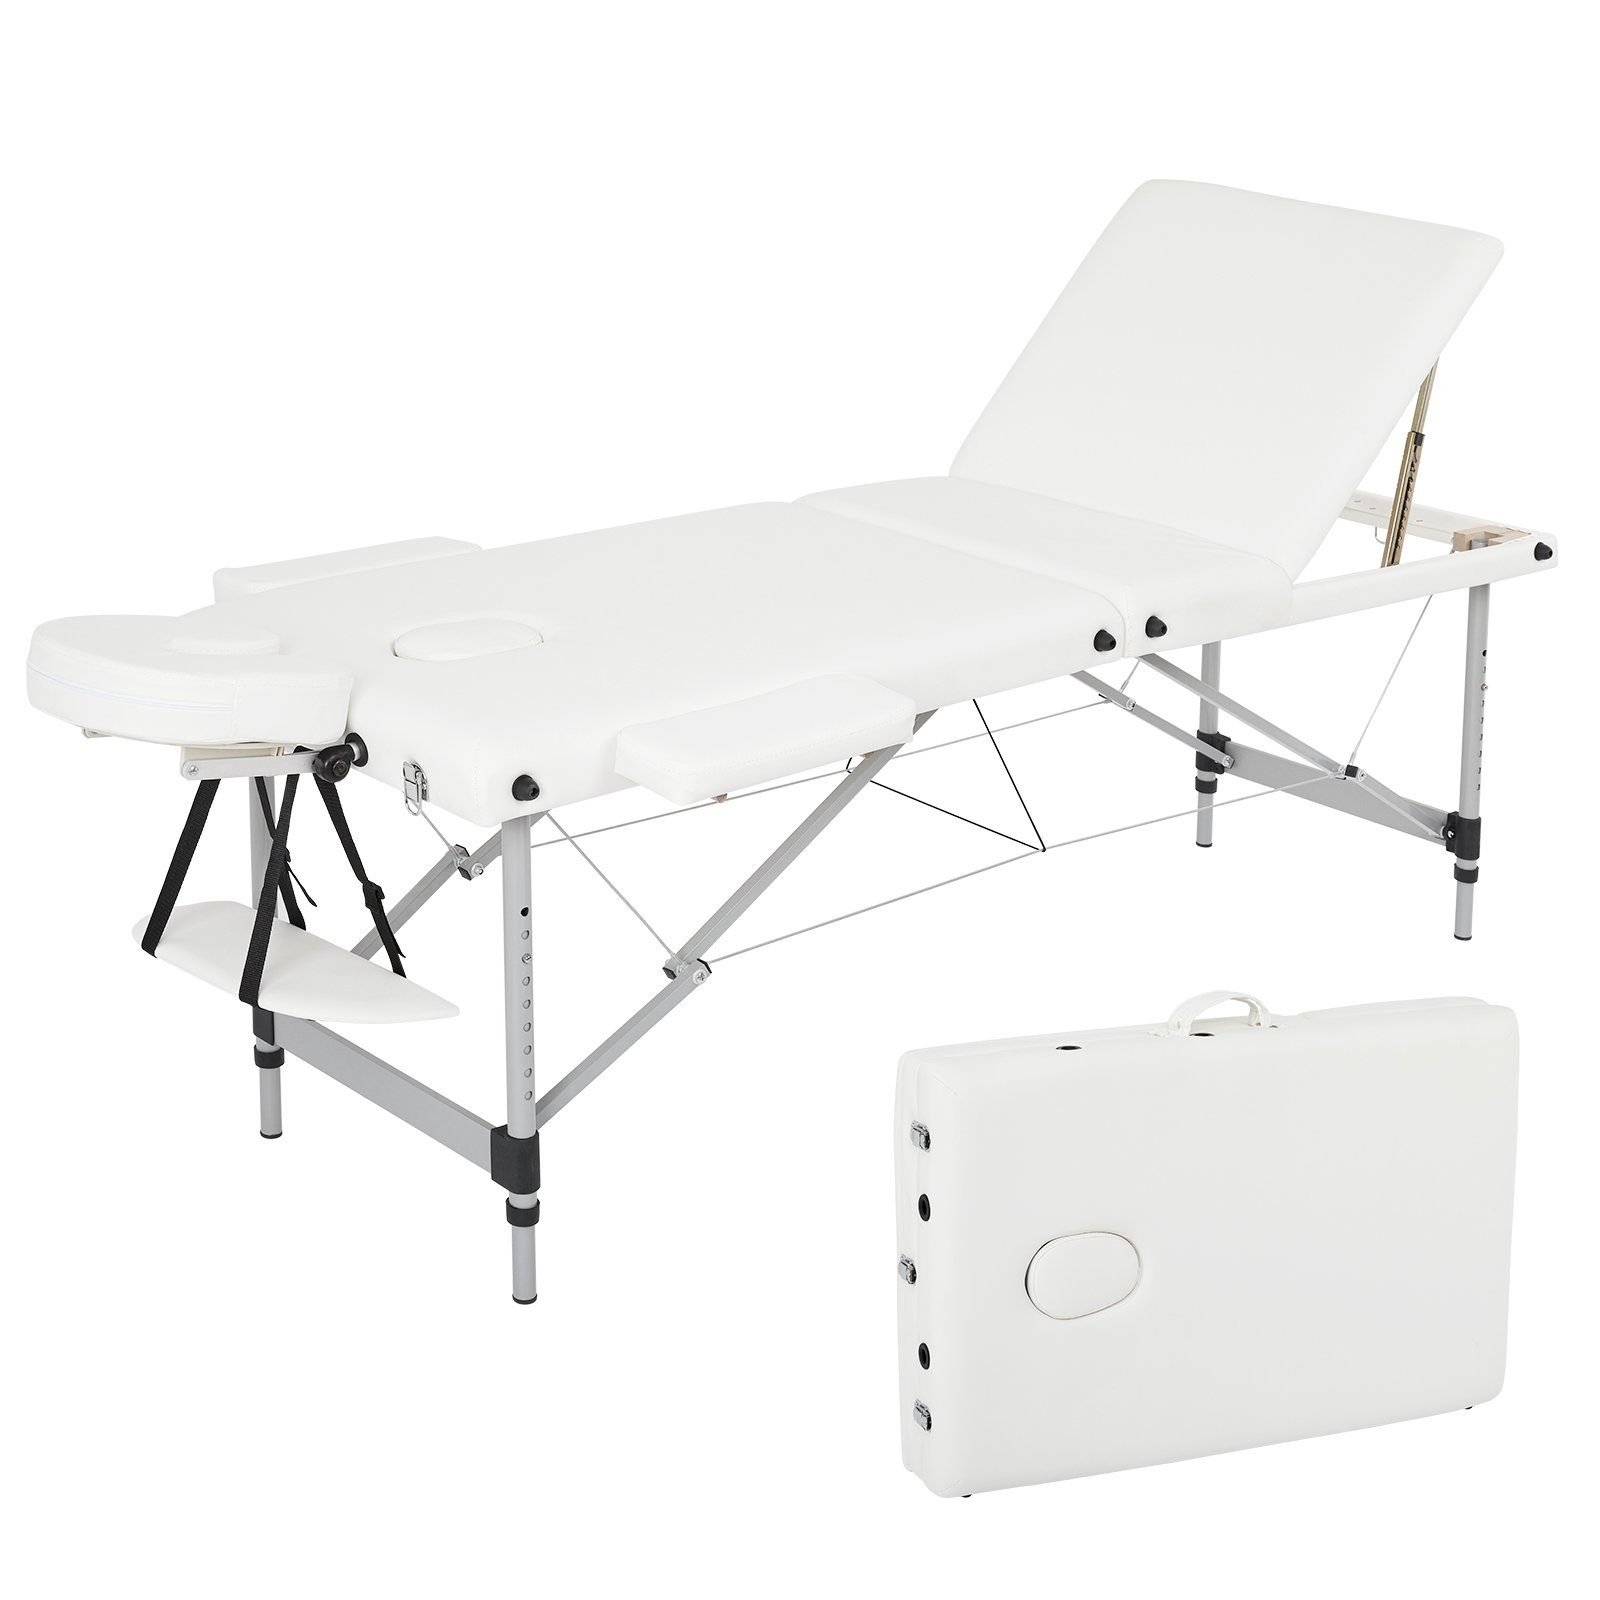 Mondeer Massageliege Mobile Therapieliege Massagebett, tragbar klappbar Massagetisch, 3 Zonen